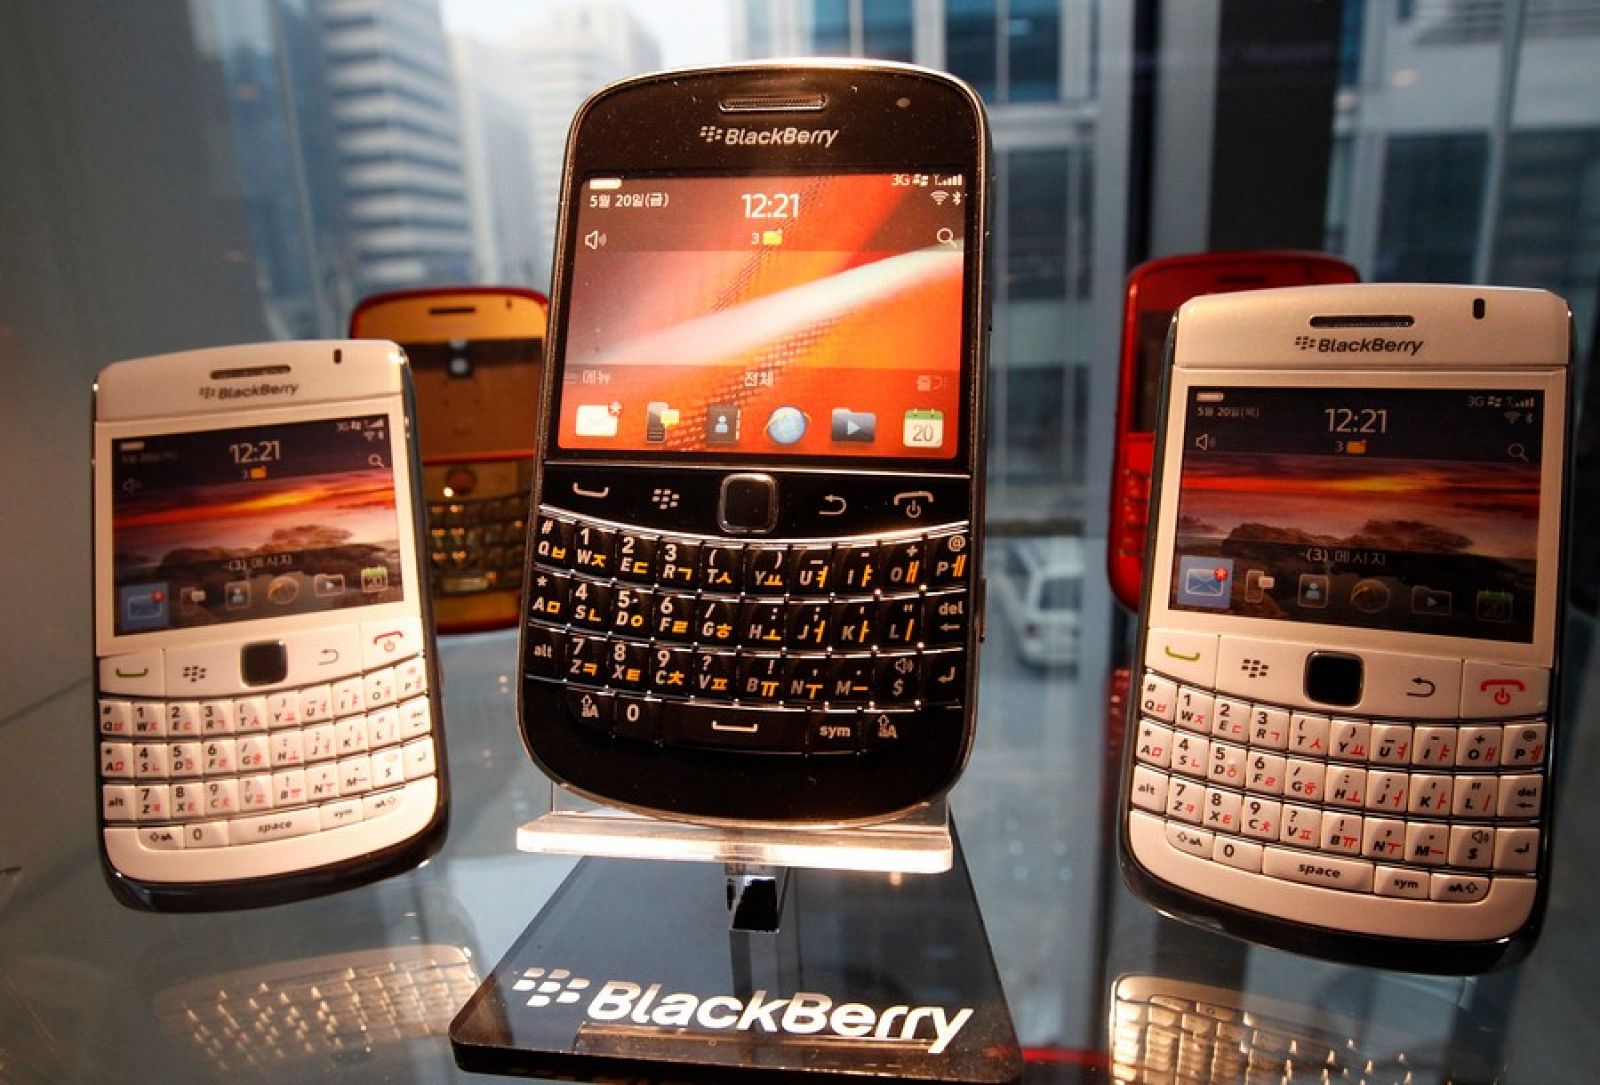 Las ventas de BlackBerry se han desplomado tras el ascenso del iPhone y los dispositivos Android